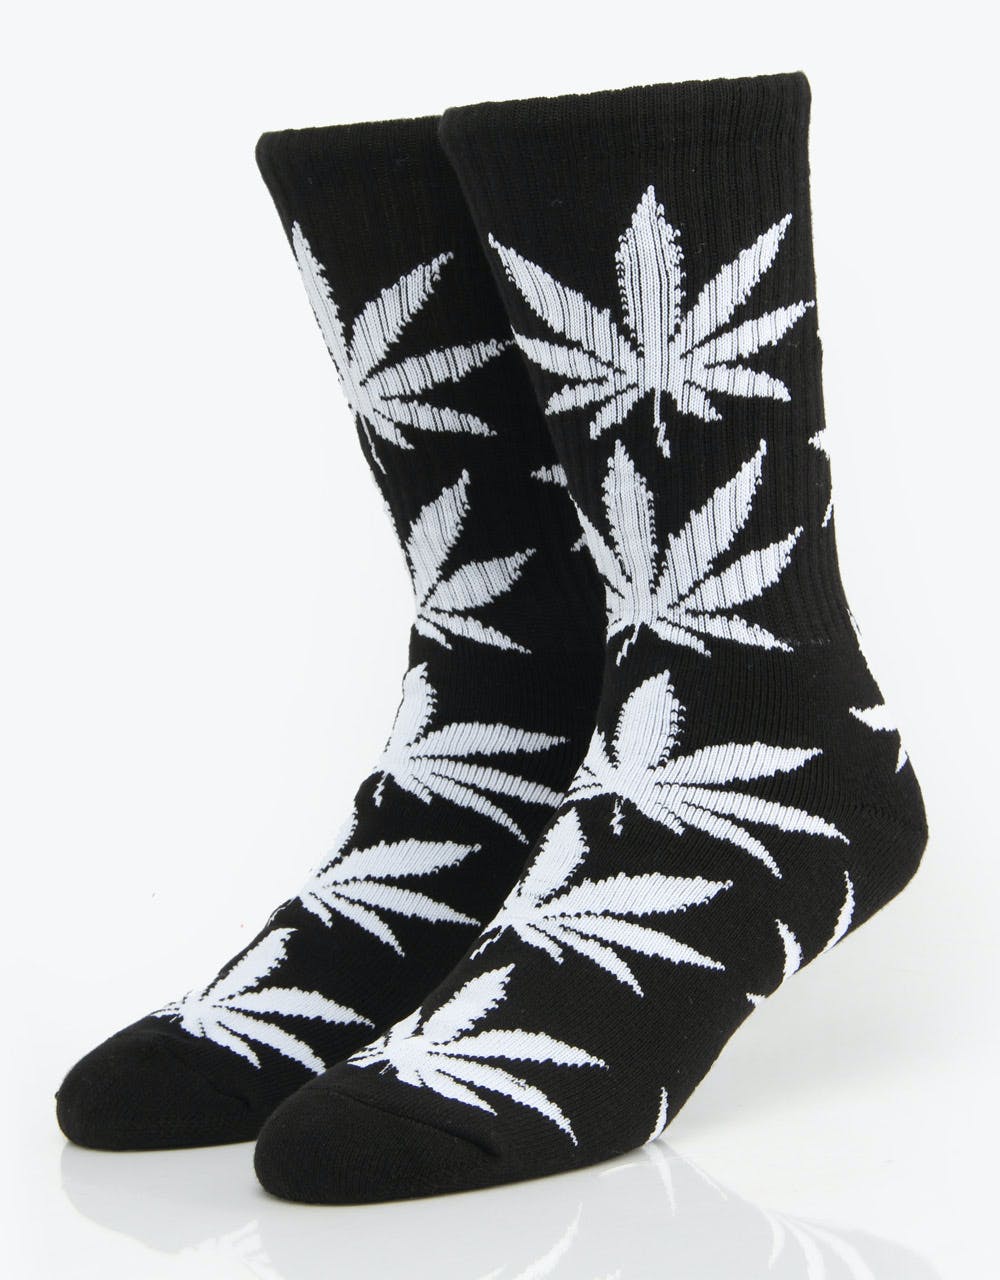 HUF Plantlife Crew Socks - Black/White